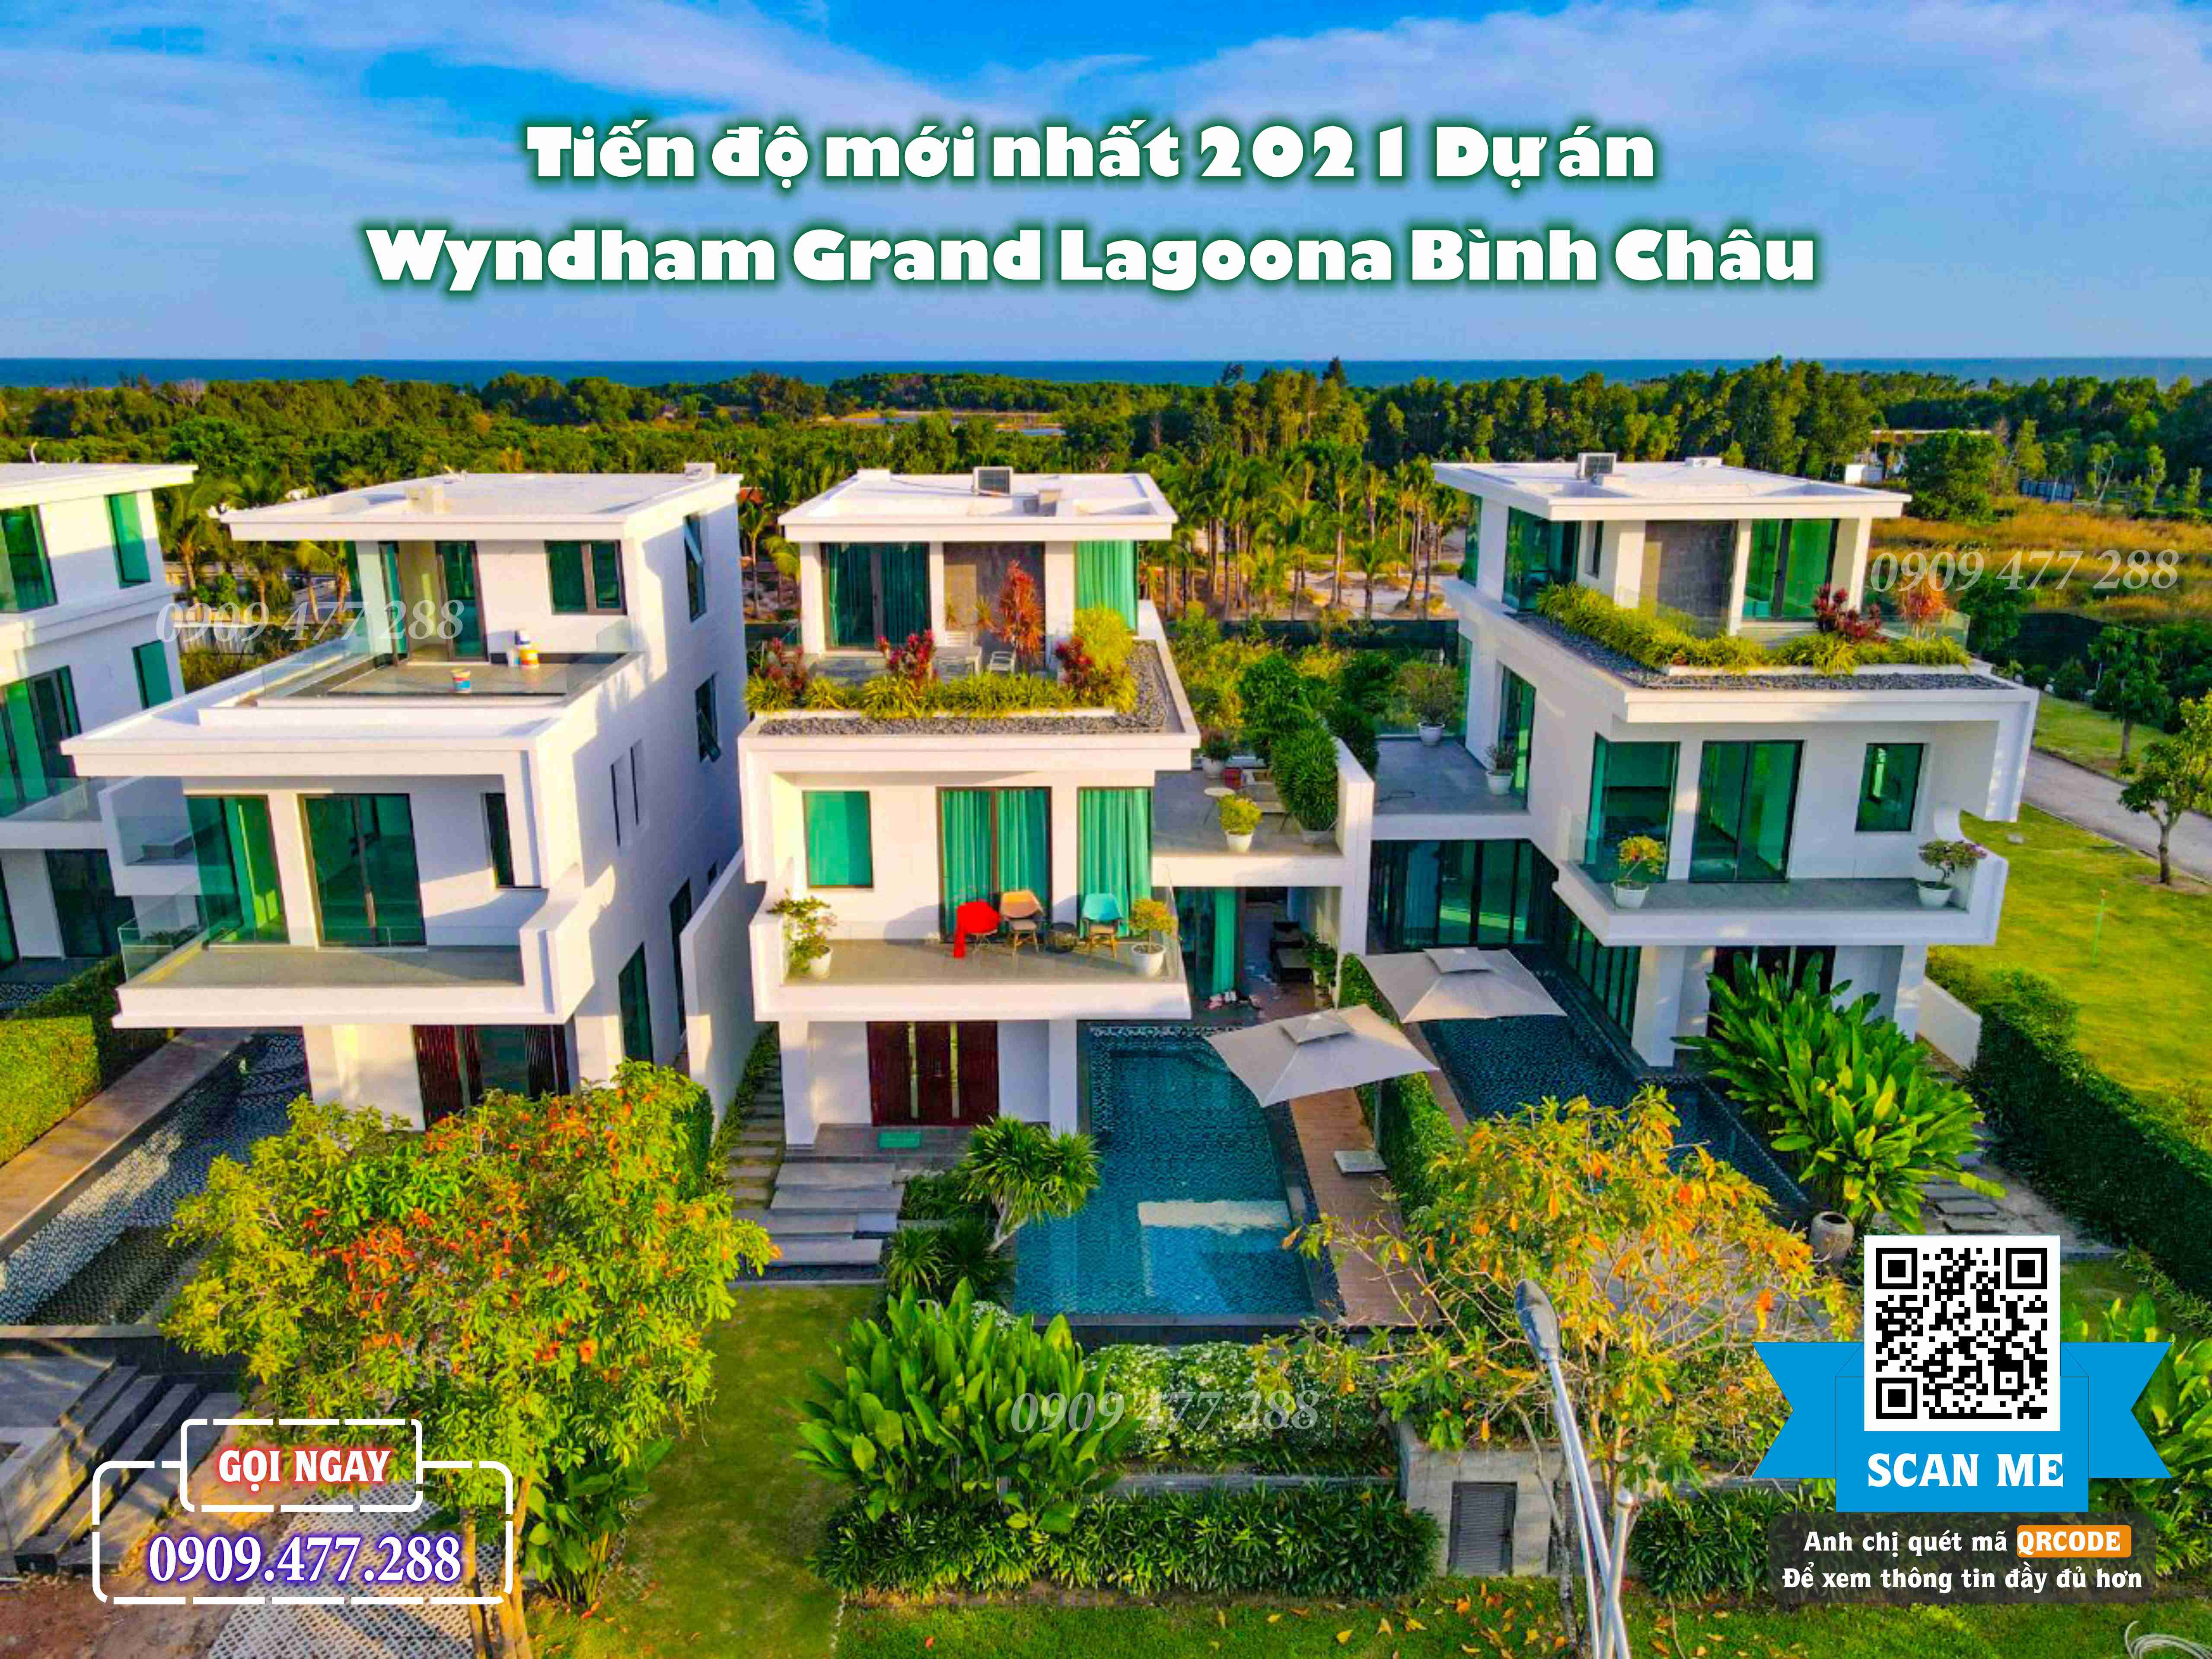 Wyndham Grand Lagoona Bình Châu (15)